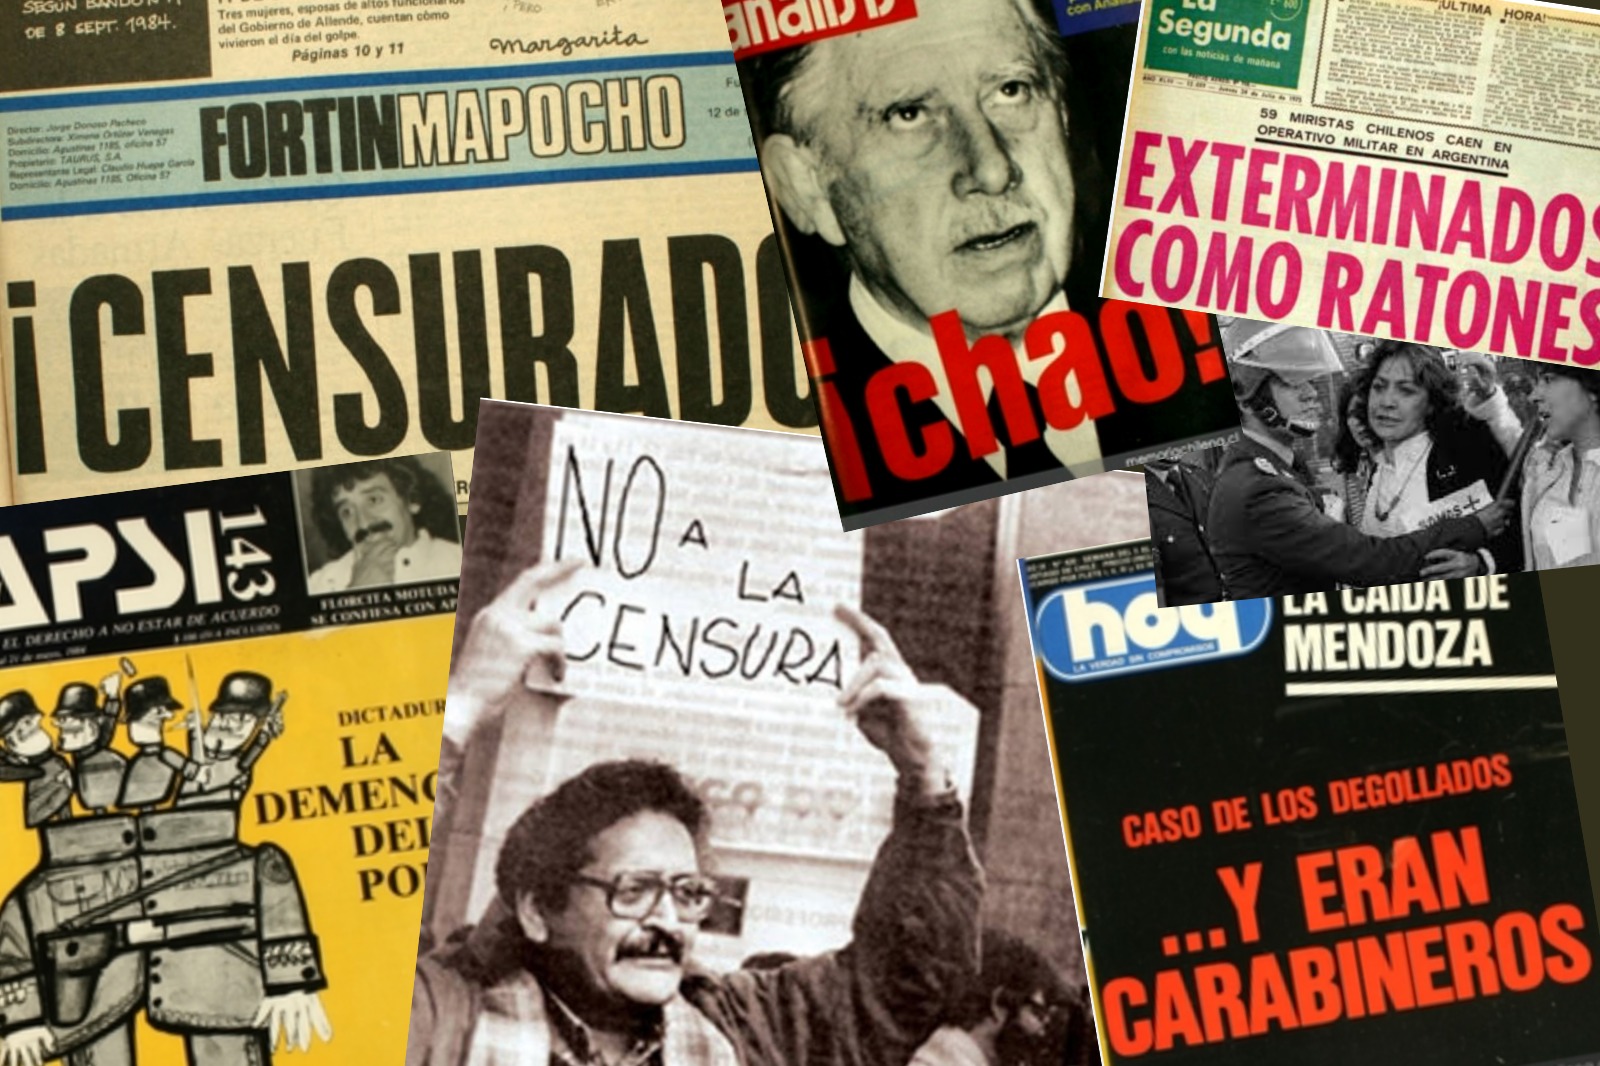 El aniquilamiento de la prensa popular: Los 36 periodistas asesinados y desaparecidos durante la dictadura